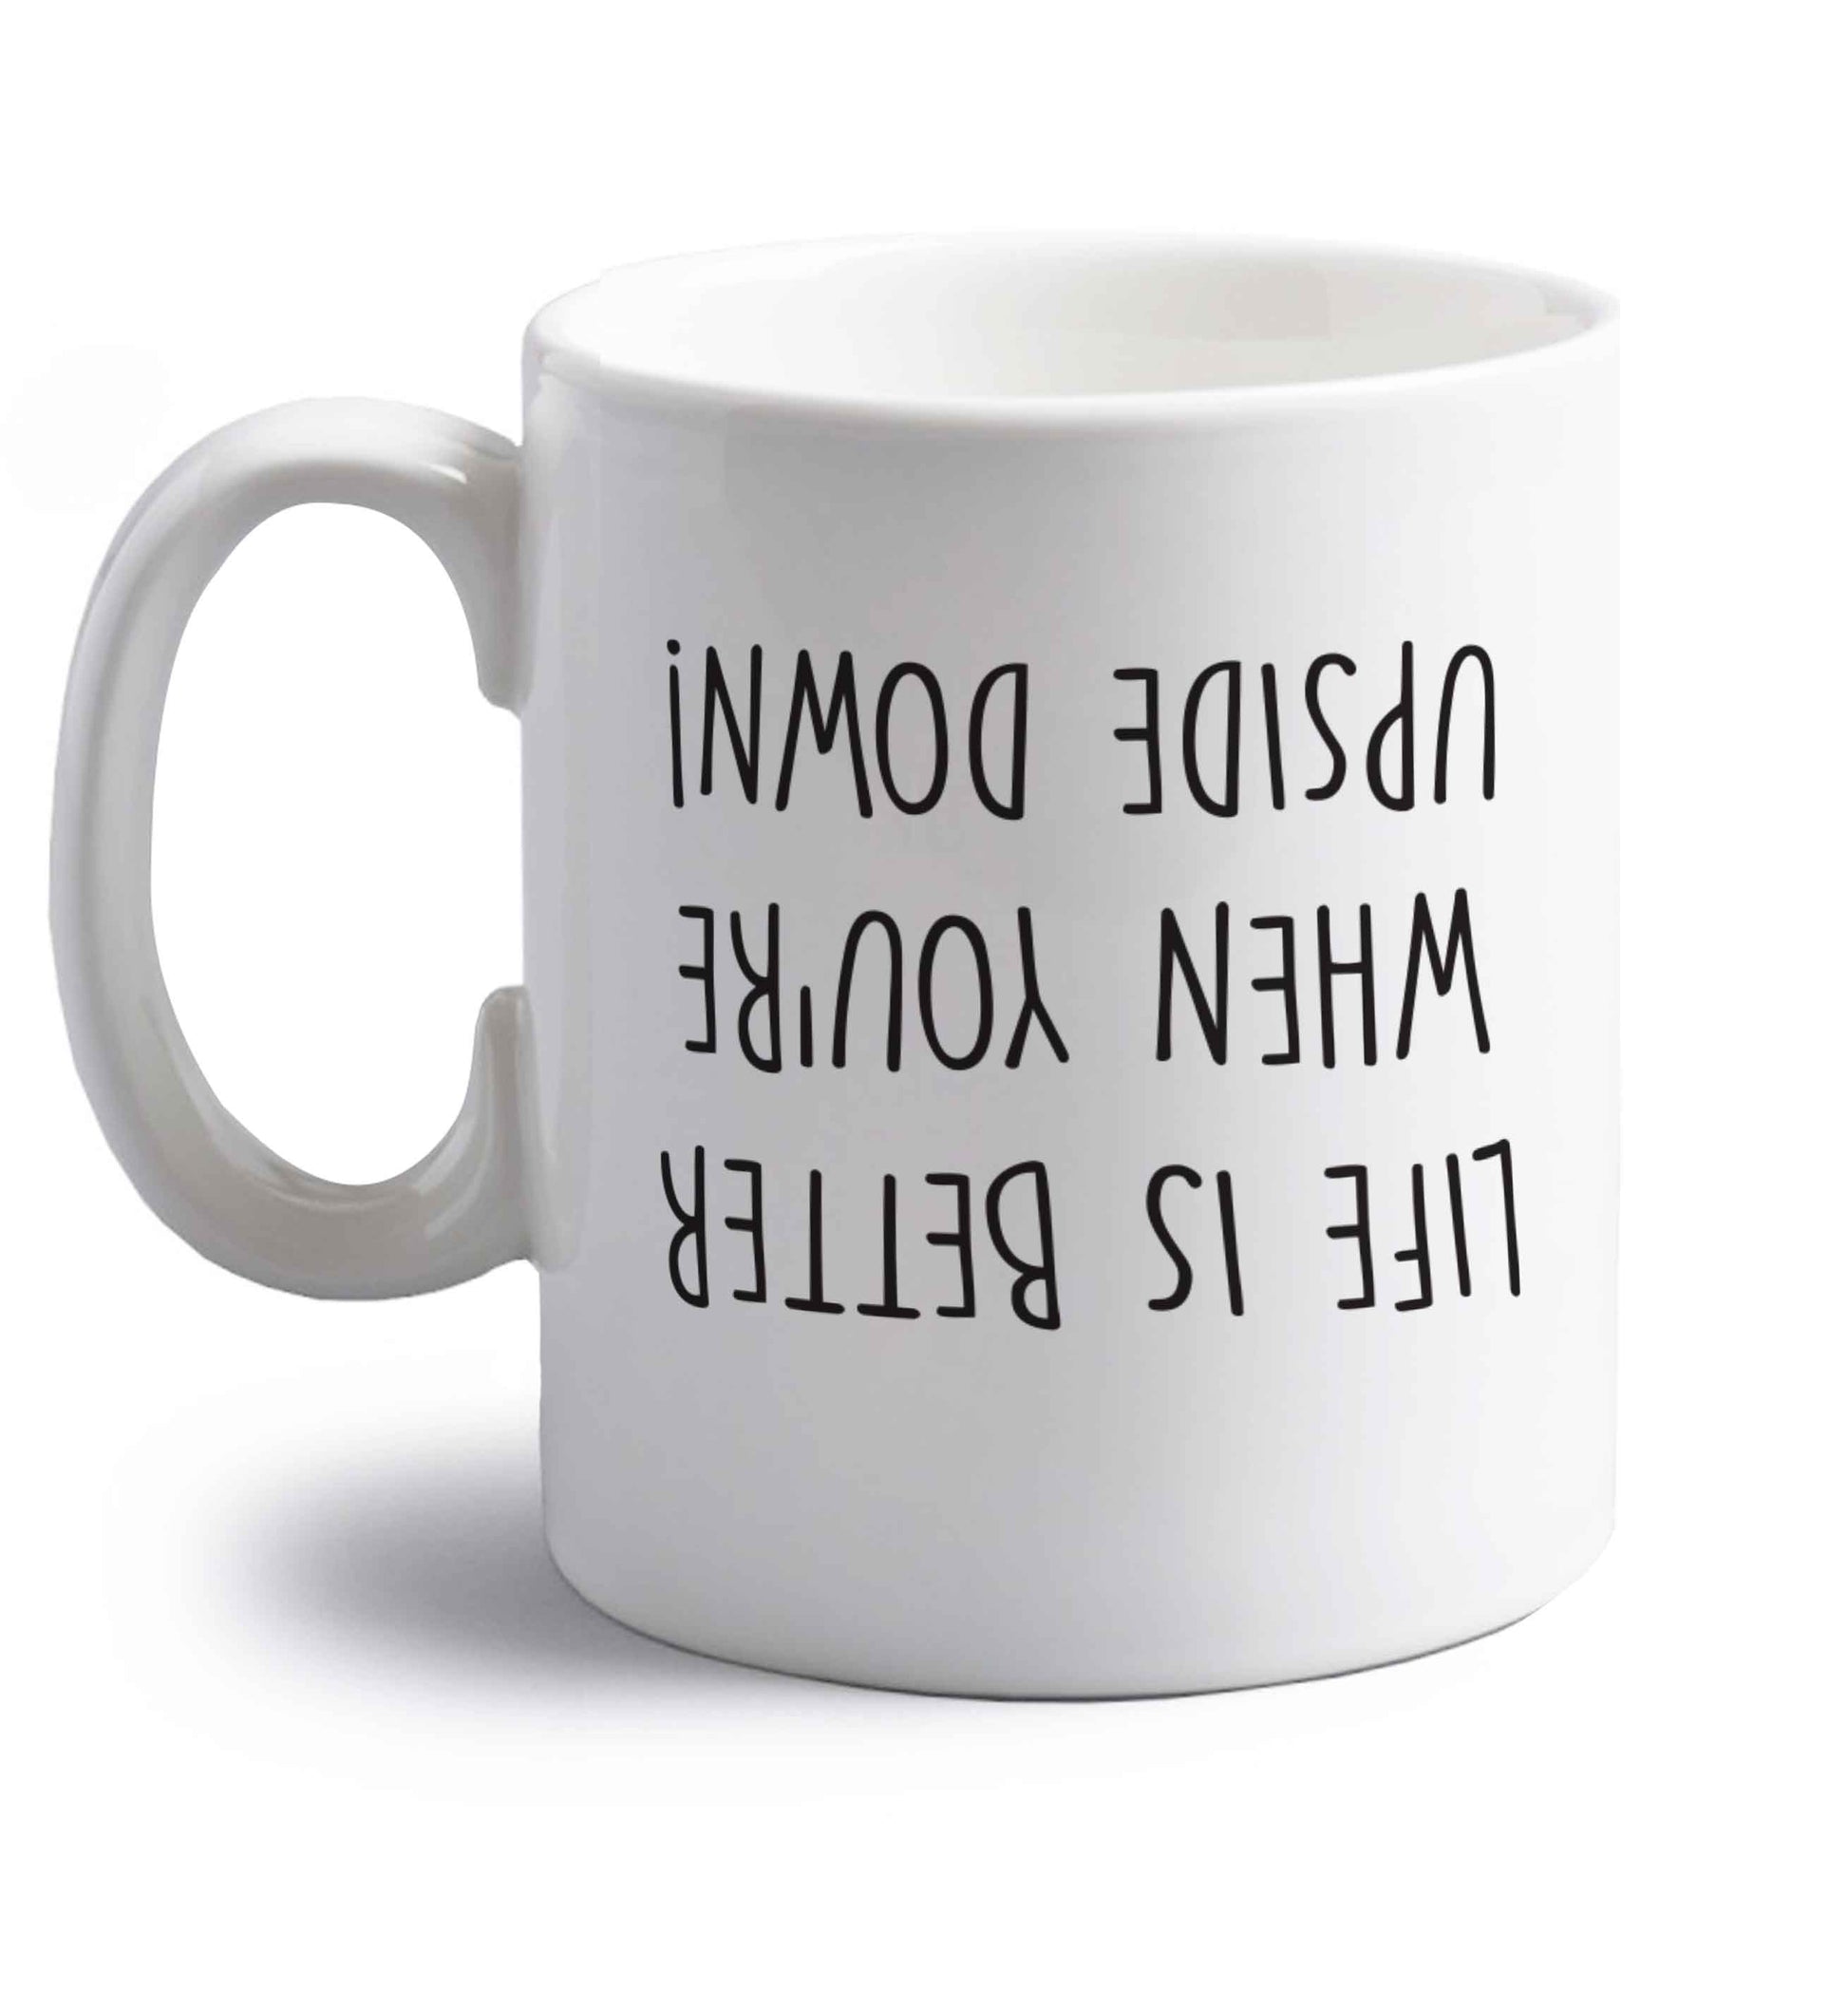 Life is better upside down right handed white ceramic mug 